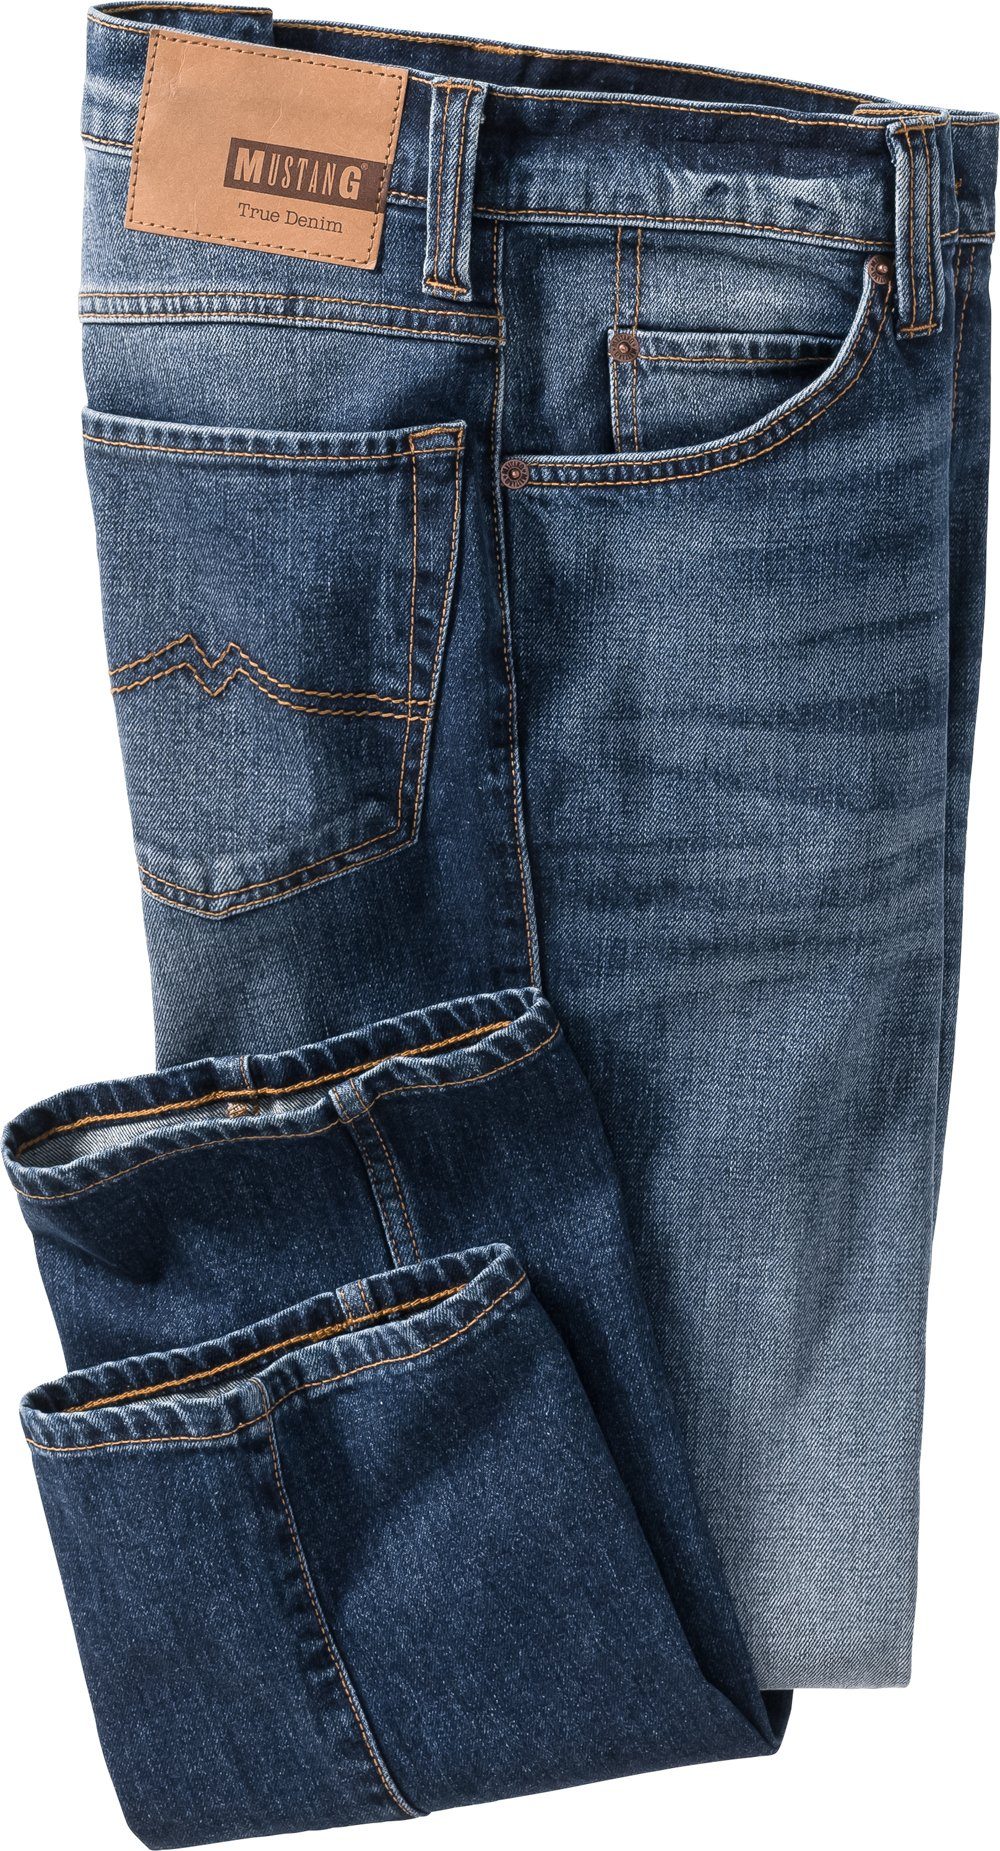 Bund Beinverlauf Stretch-Jeans MUSTANG blau und im 5-Pocket-Style, mit geradem Stretch